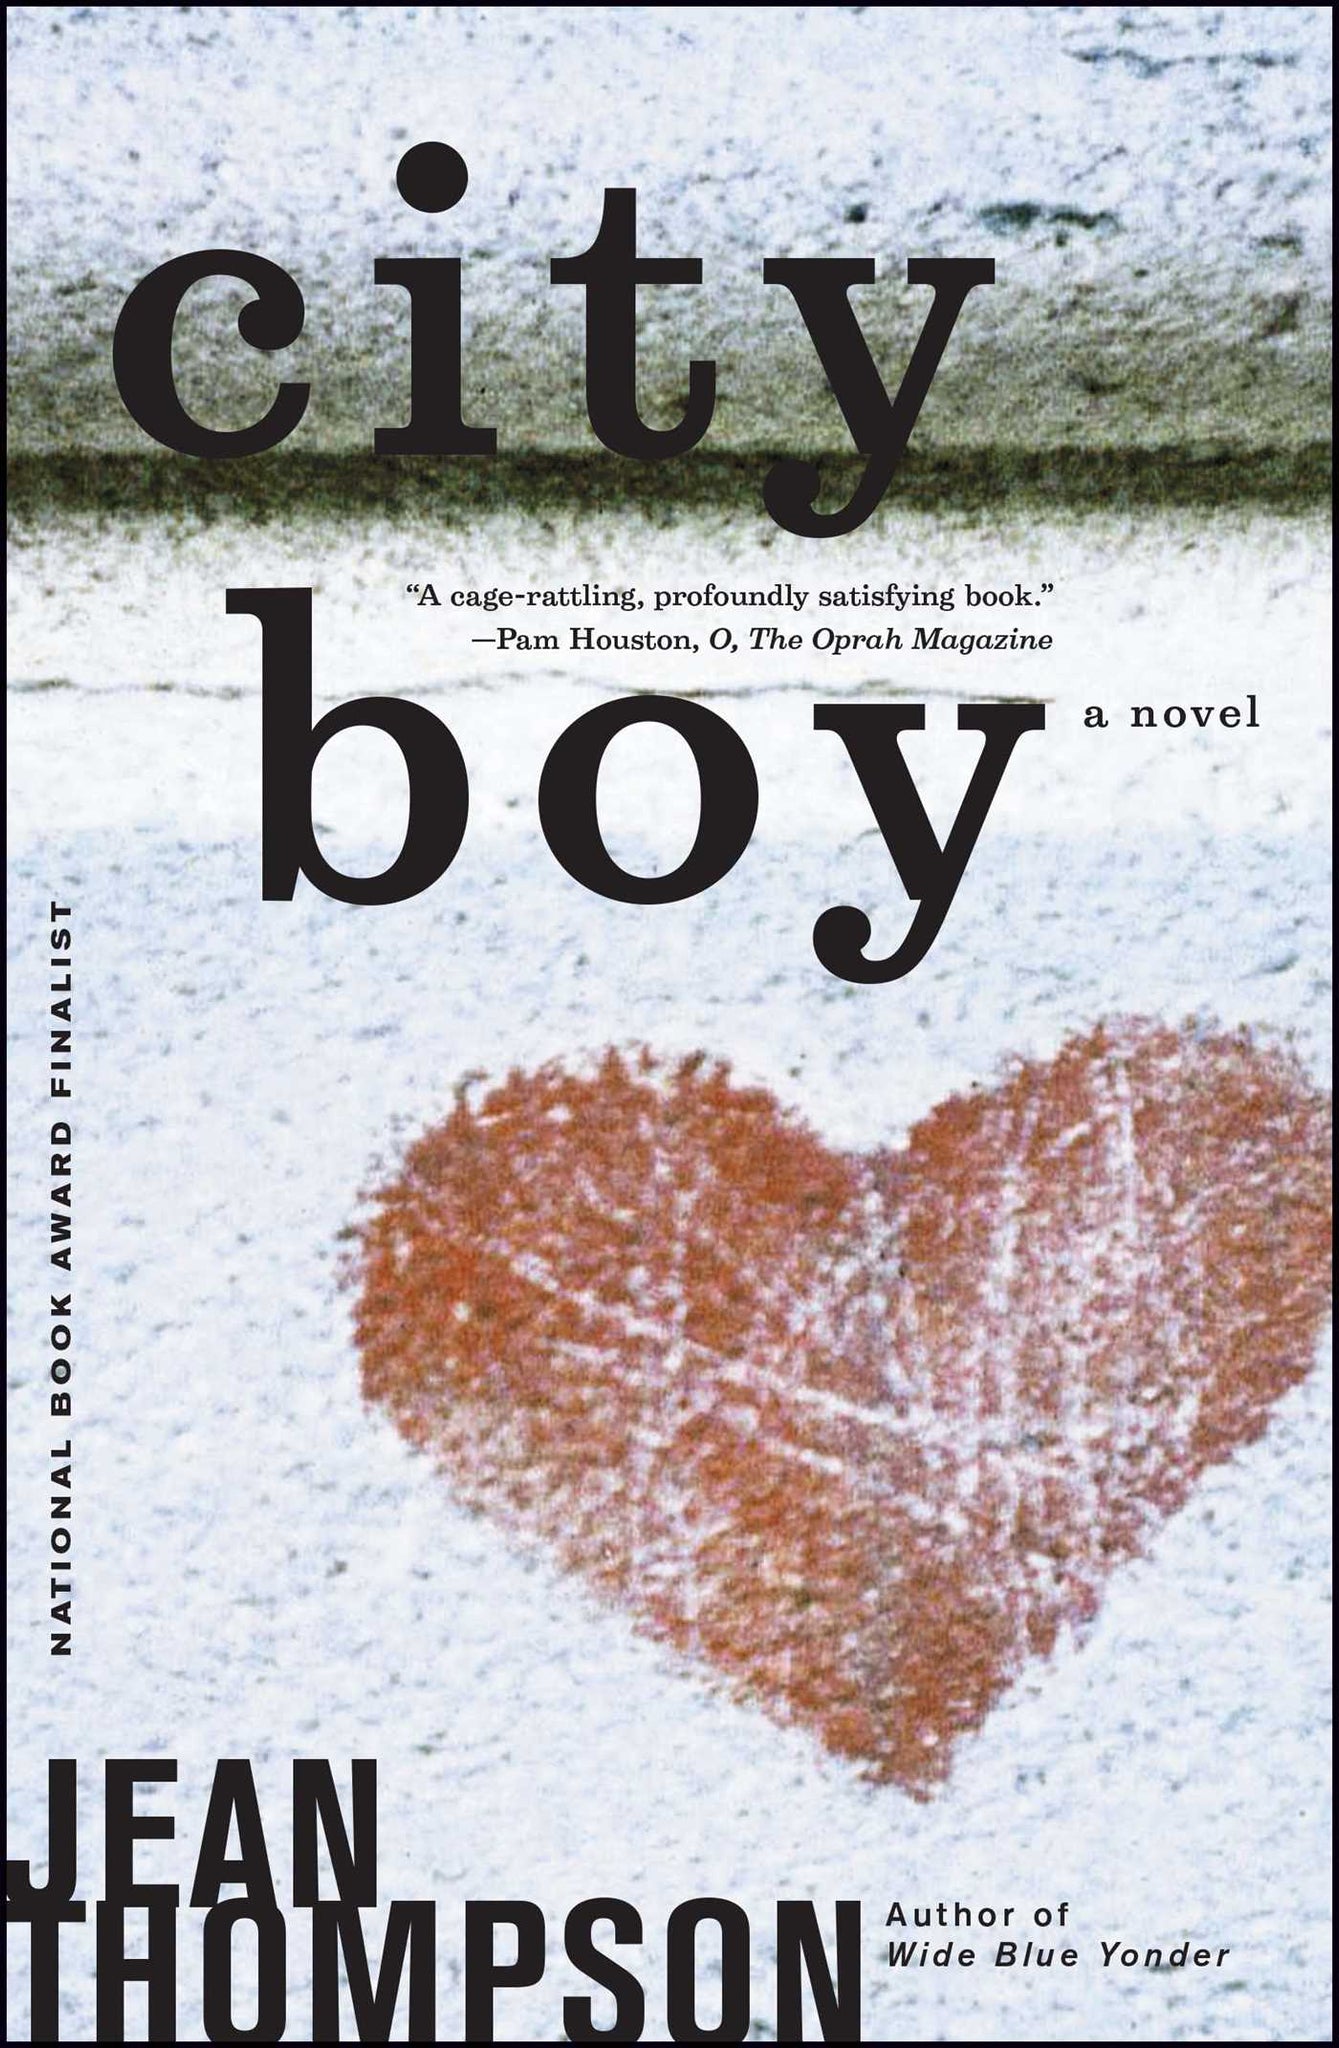 City Boy : A Novel